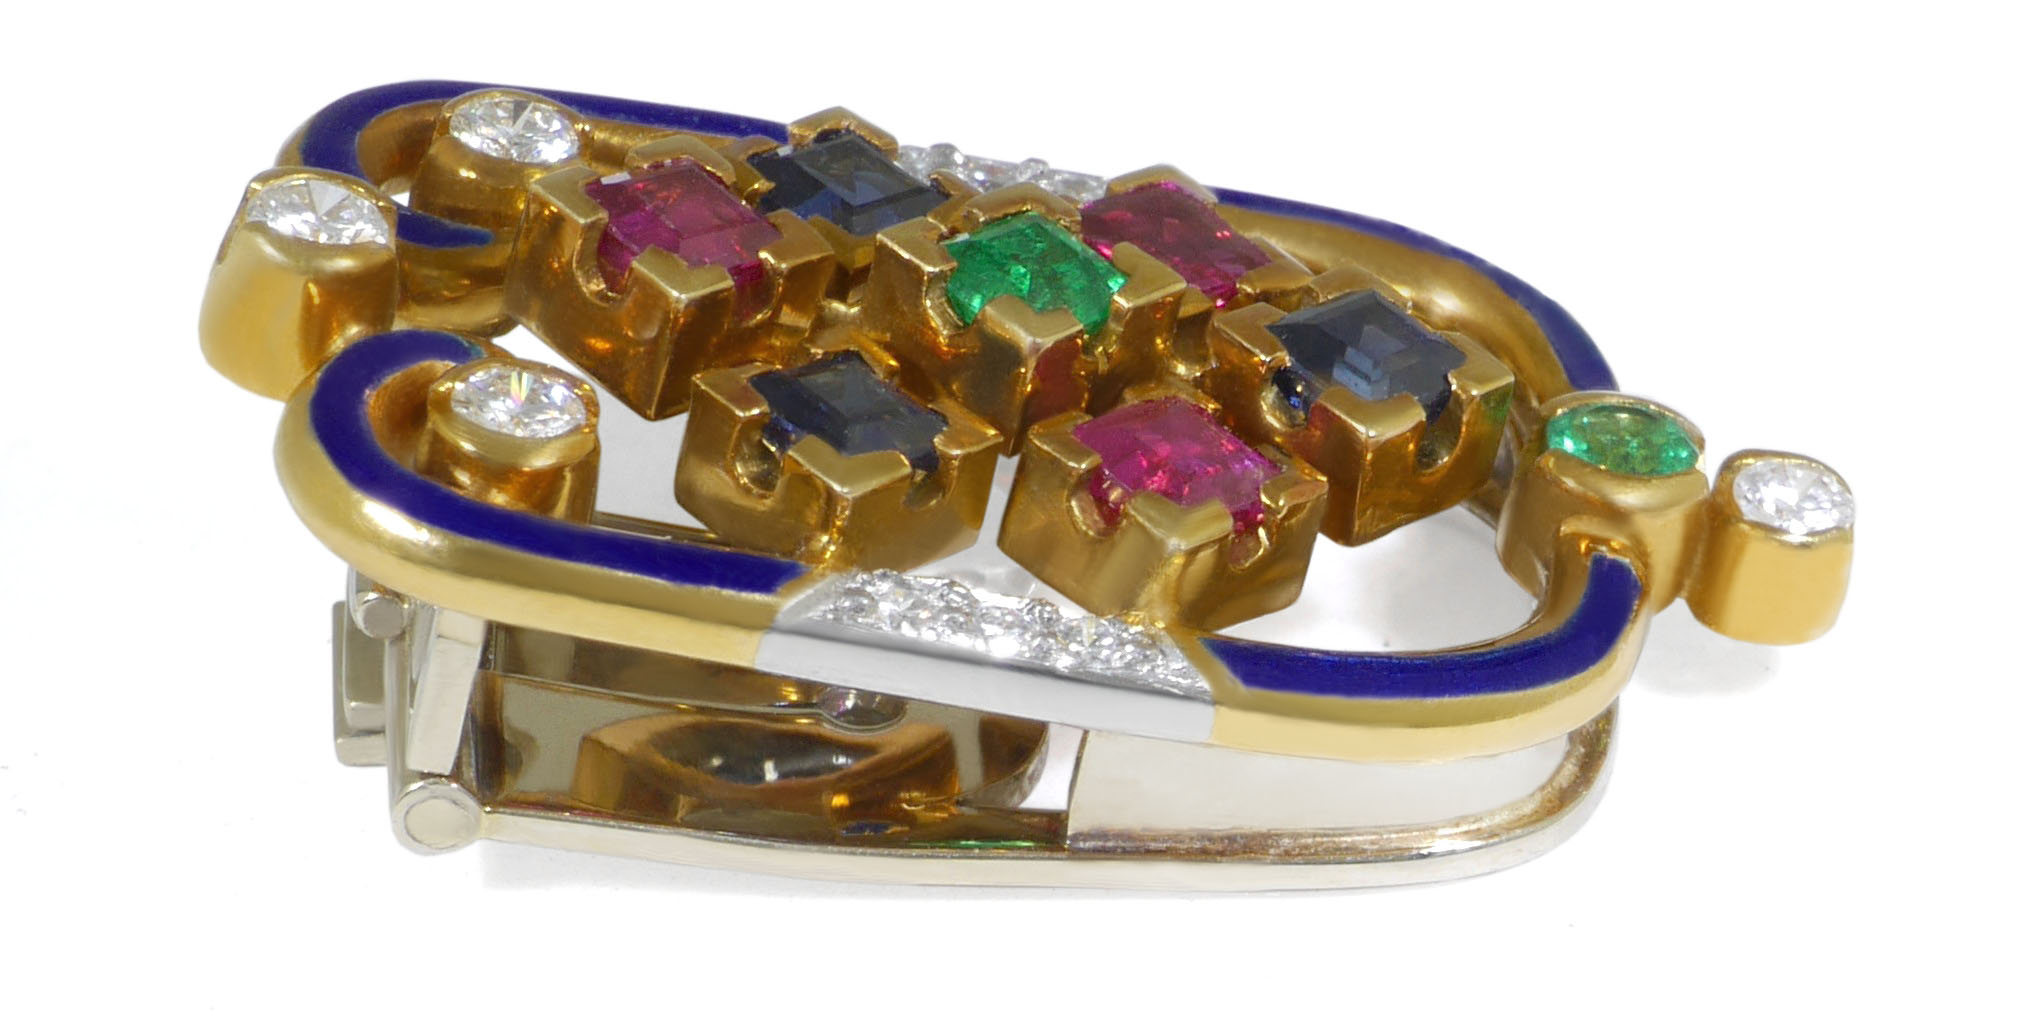 Diamant-Dressclip Brosche in Gelbgold mit Rubin, Saphir, Smaragd und 10 Diamanten